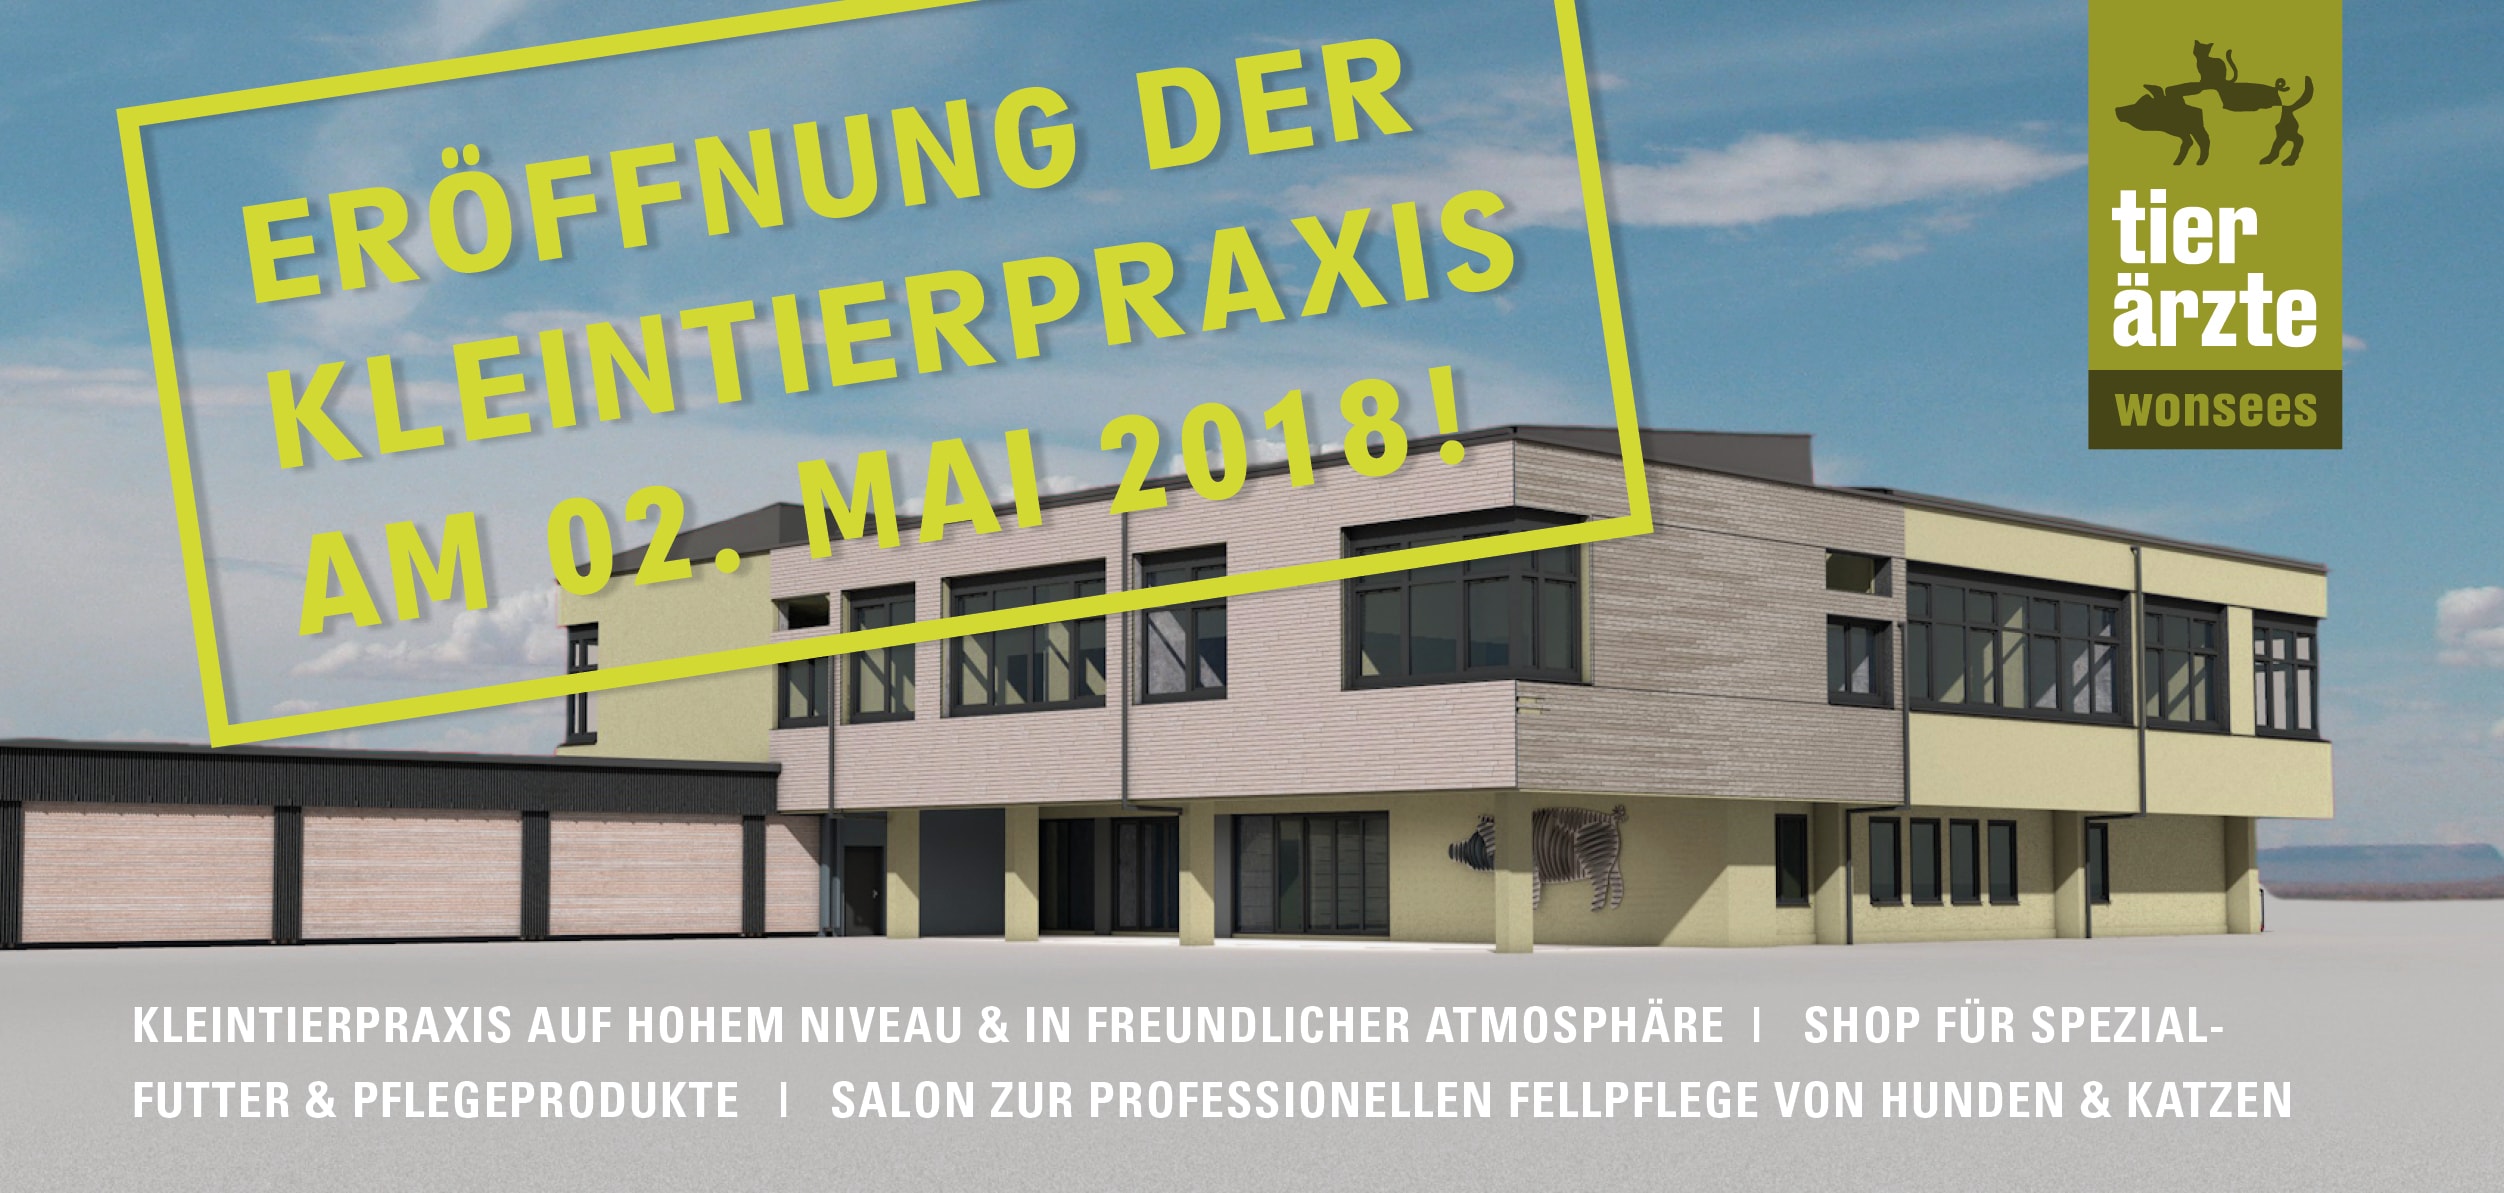 Eröffnung Kleintierpraxis Tierärzte Wonsees 02.Mai 2018